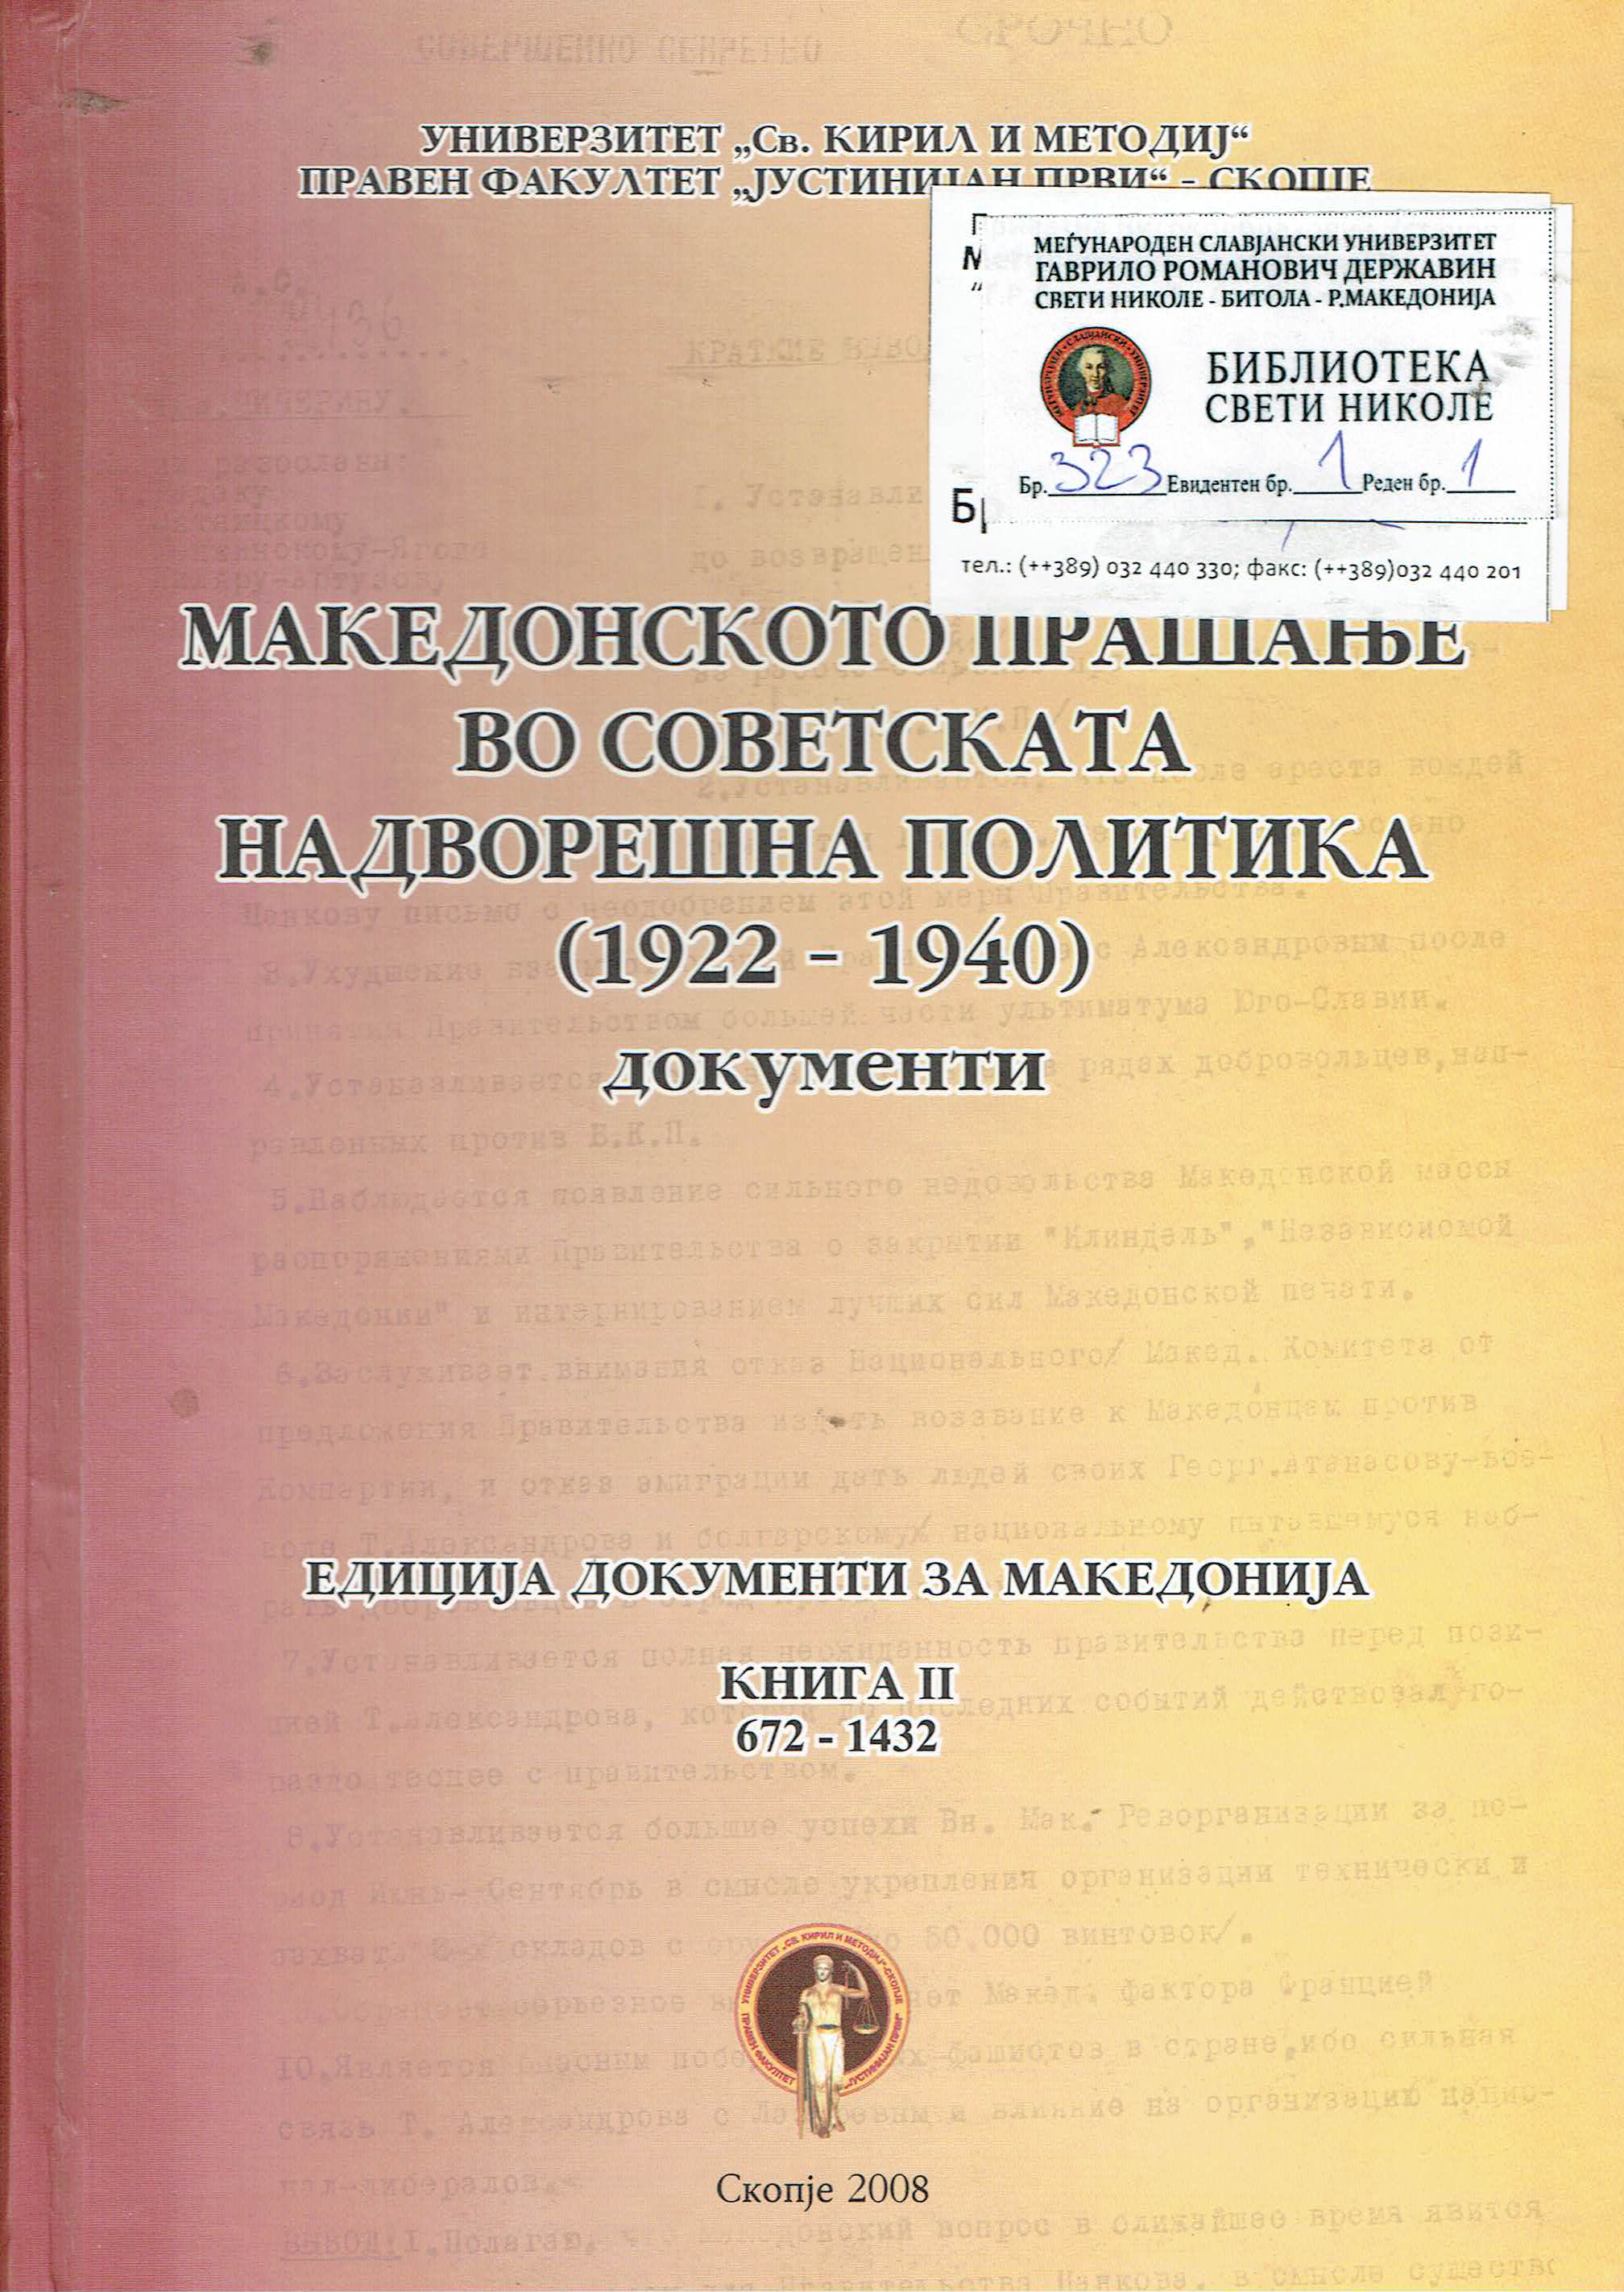 Македонското прашање во Советската надворешна политика (1922 - 1940)